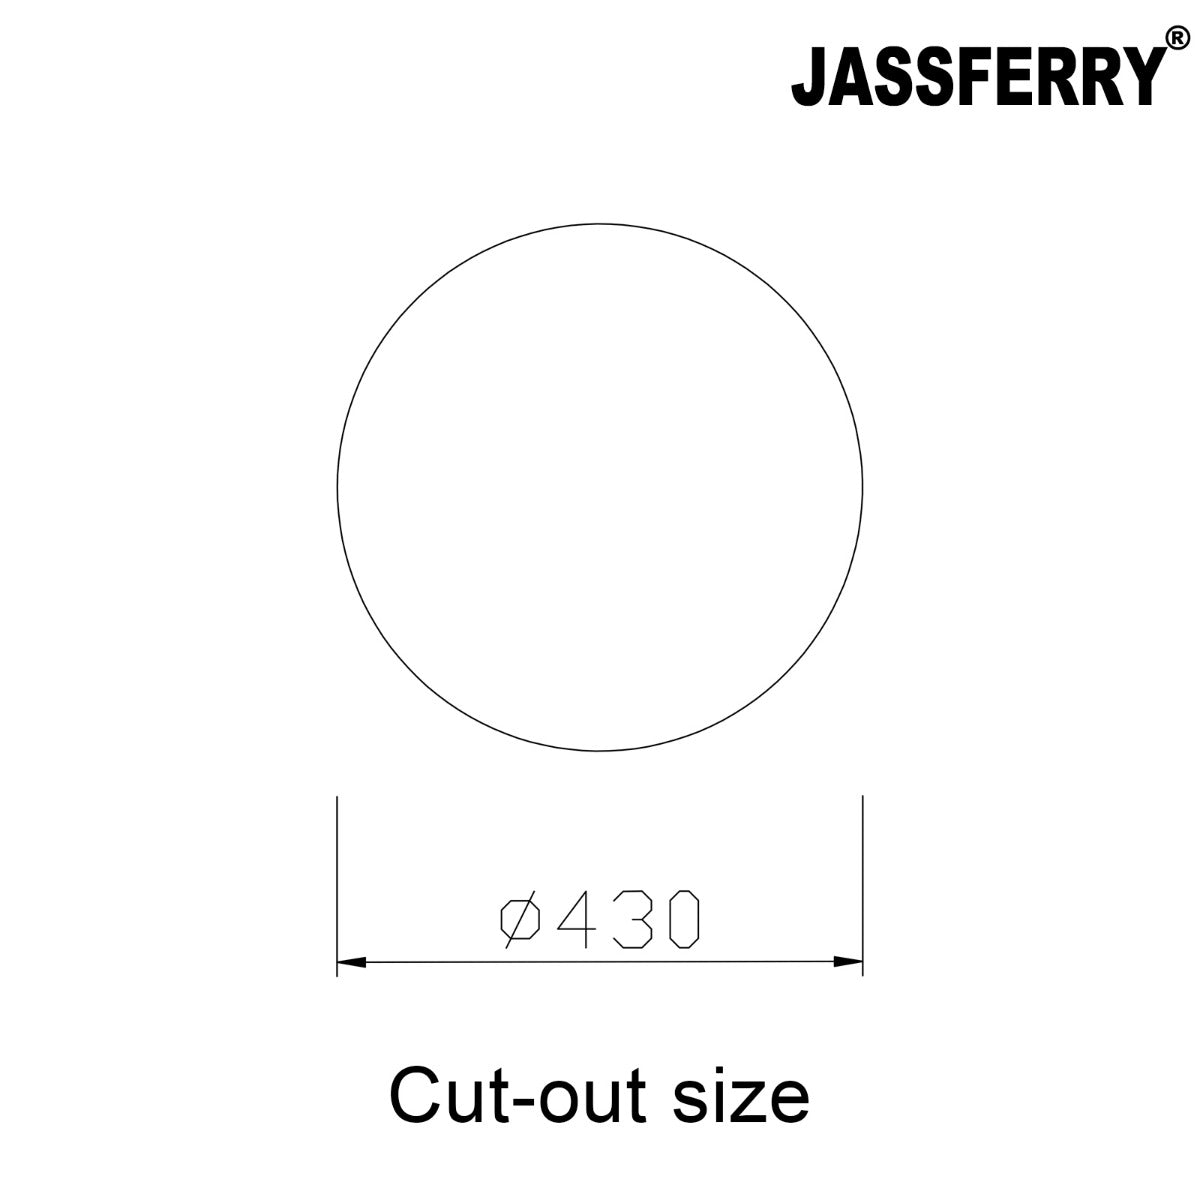 JassferryJASSFERRY 145mm Depth Stainless Steel Sink Round Outdoor Camping DrainerKitchen Sinks